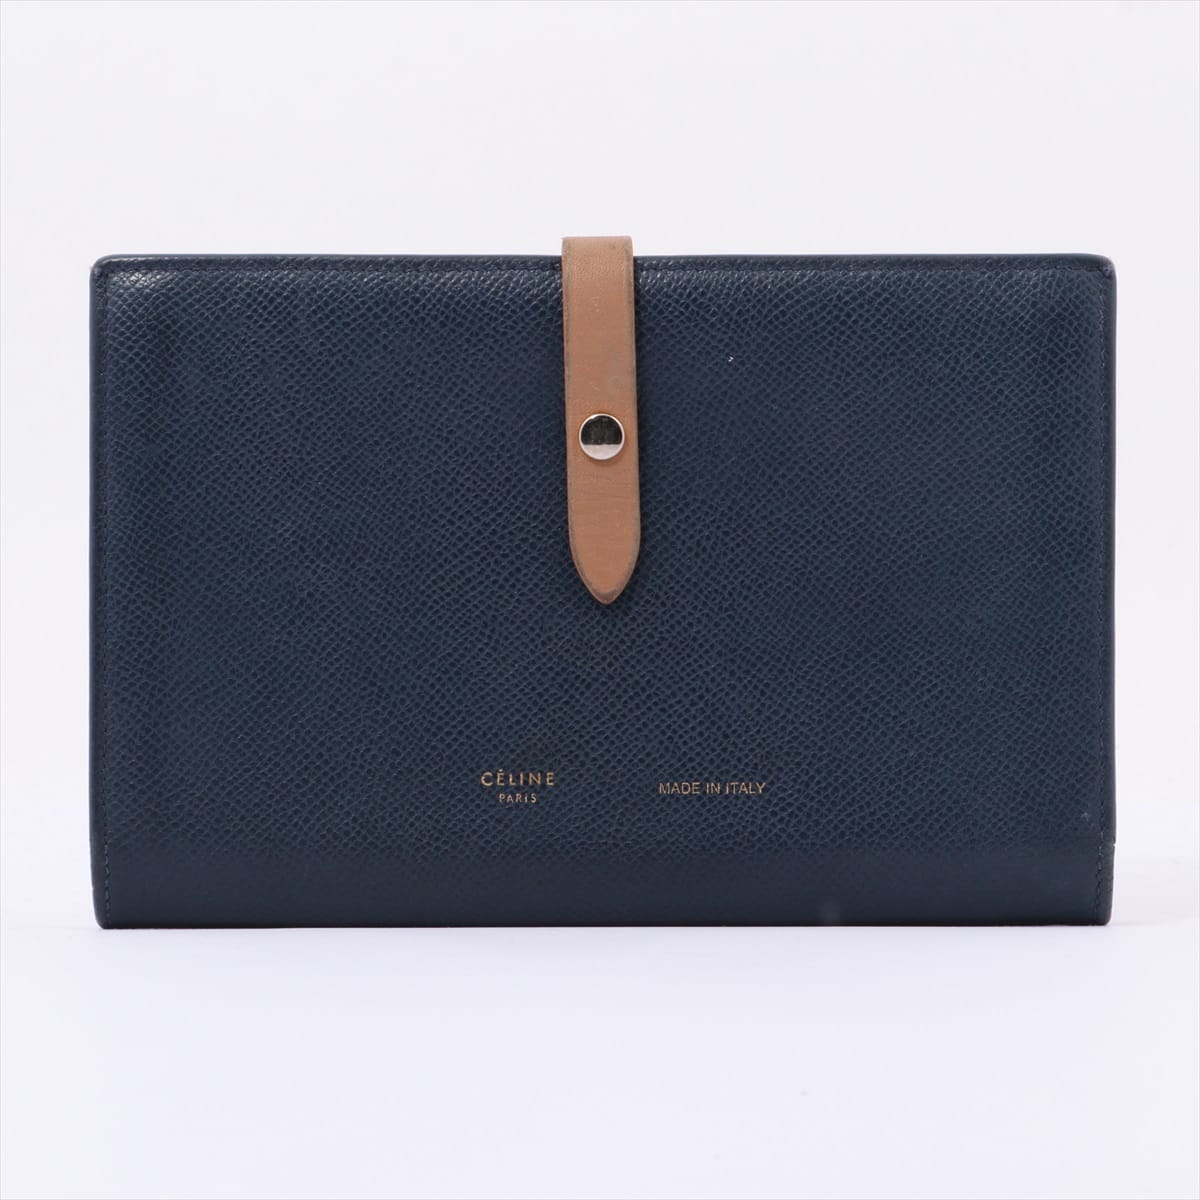 CELINE Strap Large Multifunction Leather Wallet Navy blue